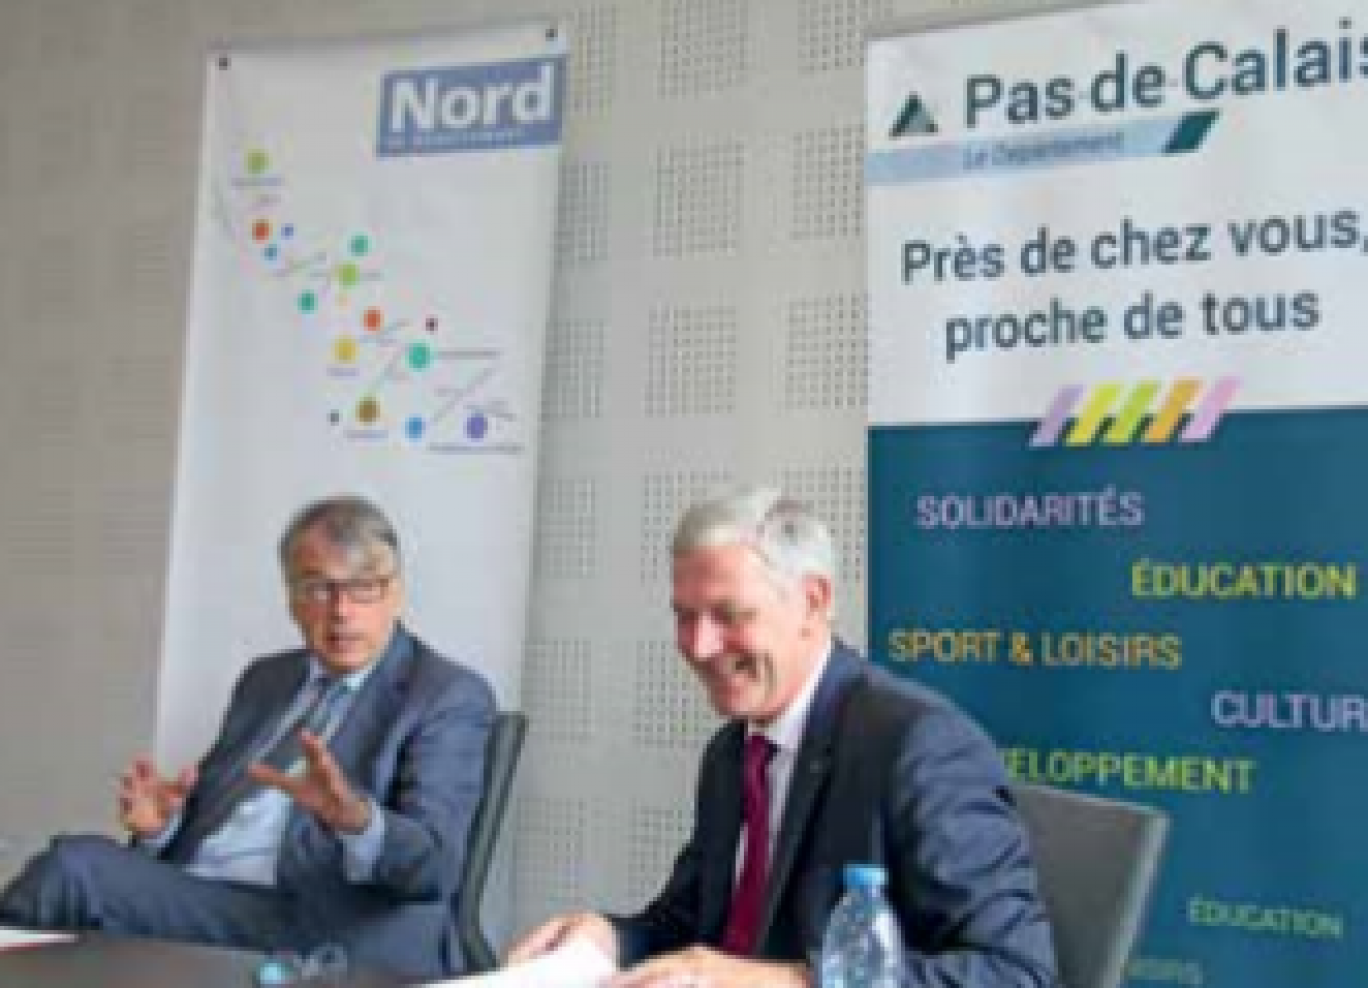 Les deux présidents, Jean-René Lecerf et Michel Dagbert, ont présenté solidairement leur proposition "Pour un nouveau pacte financier avec l’État" avec beaucoup de conviction.